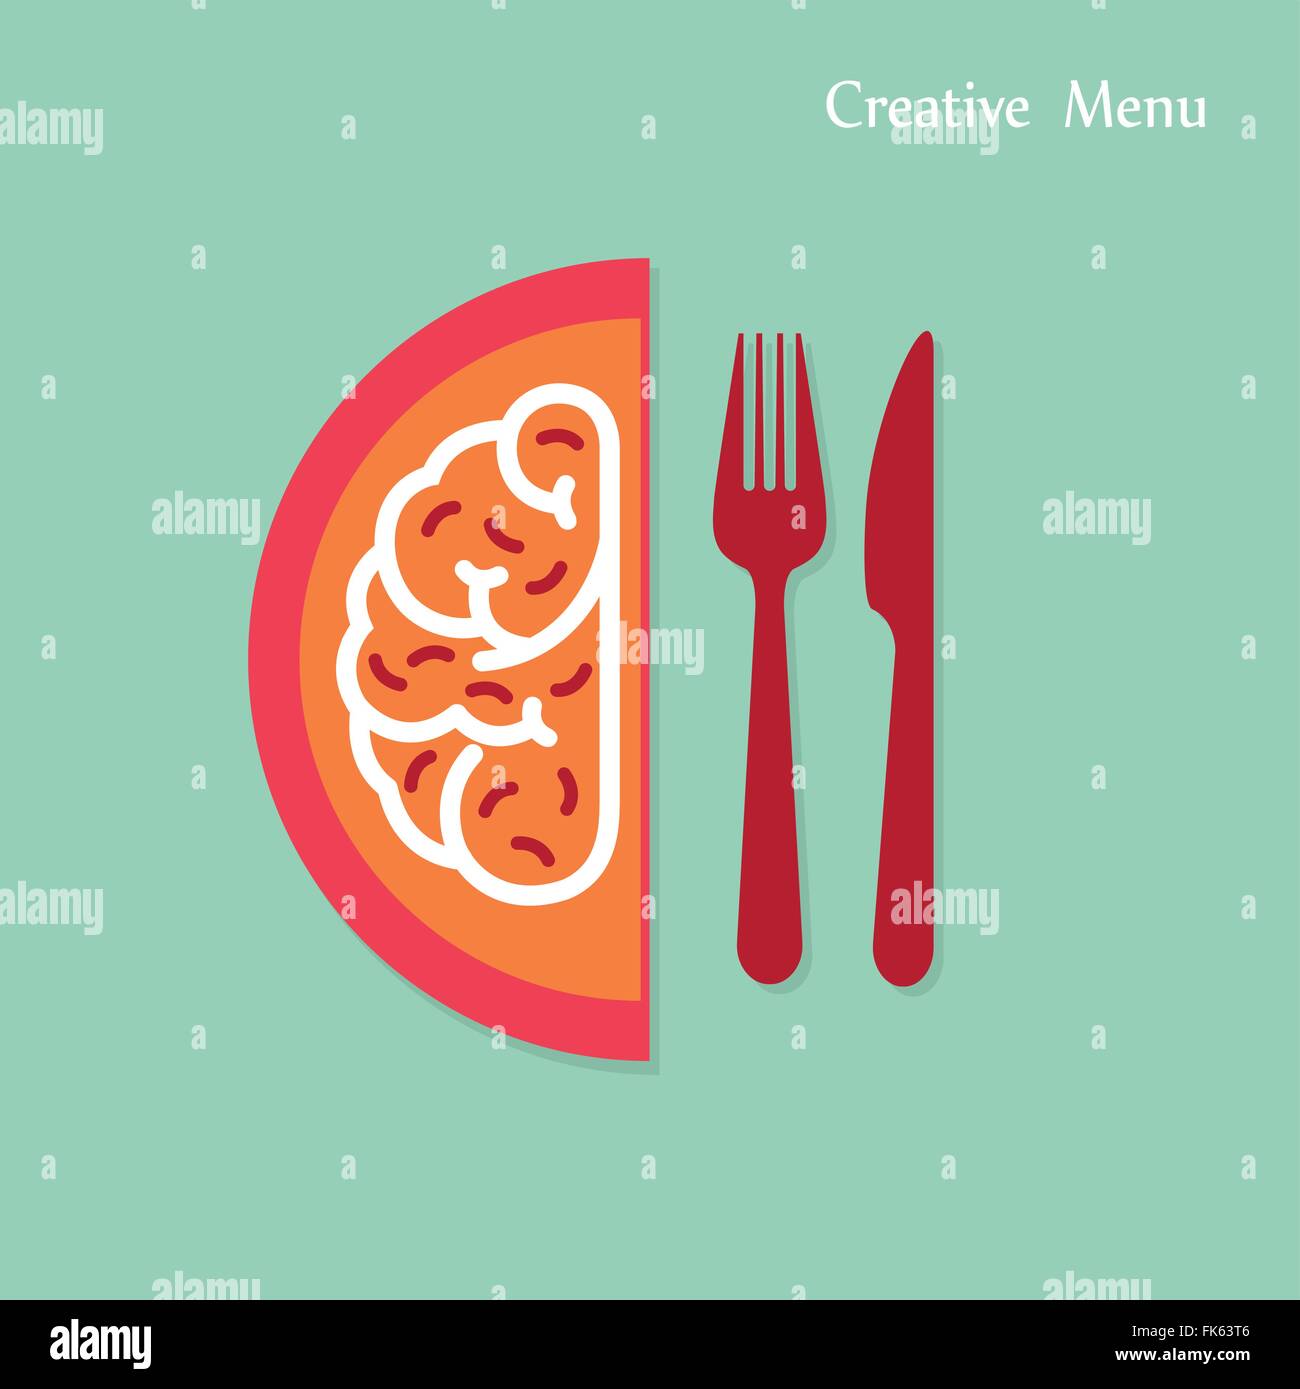 Kreative Gehirnhälfte Idee Konzept mit Messer und Gabel zu unterzeichnen auf Hintergrund. Kreativität-Menü Konzepte, Business-Konzept. Vektor-illustrati Stock Vektor